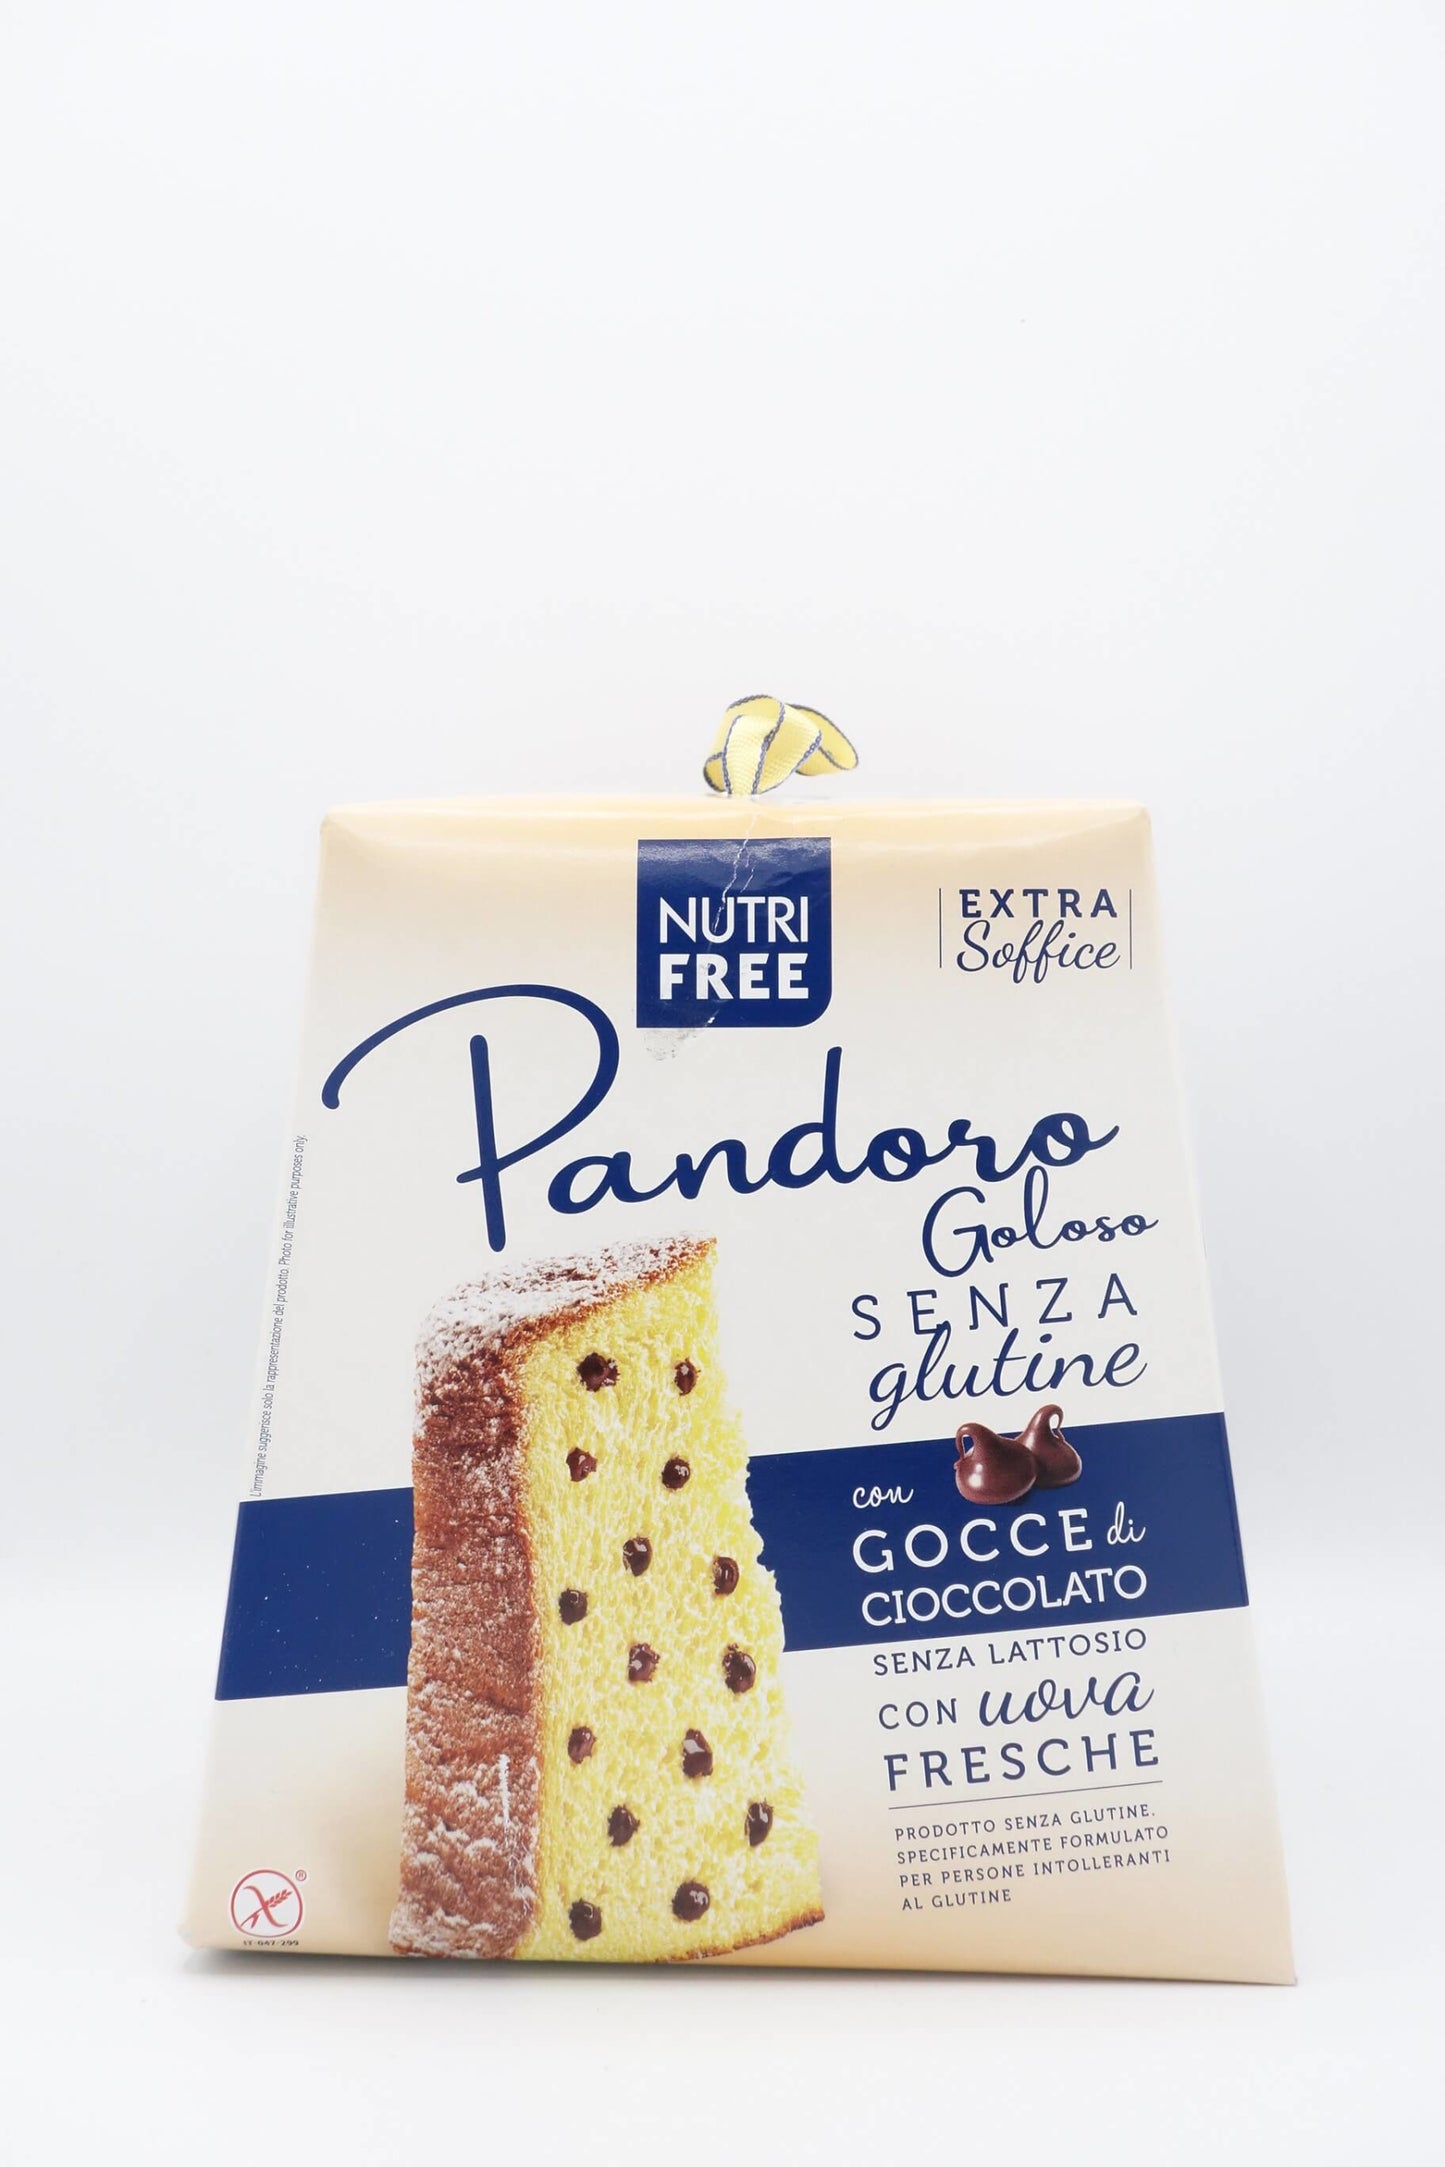 Pandoro italien panettone sans gluten et sans lactose - Nutrifree